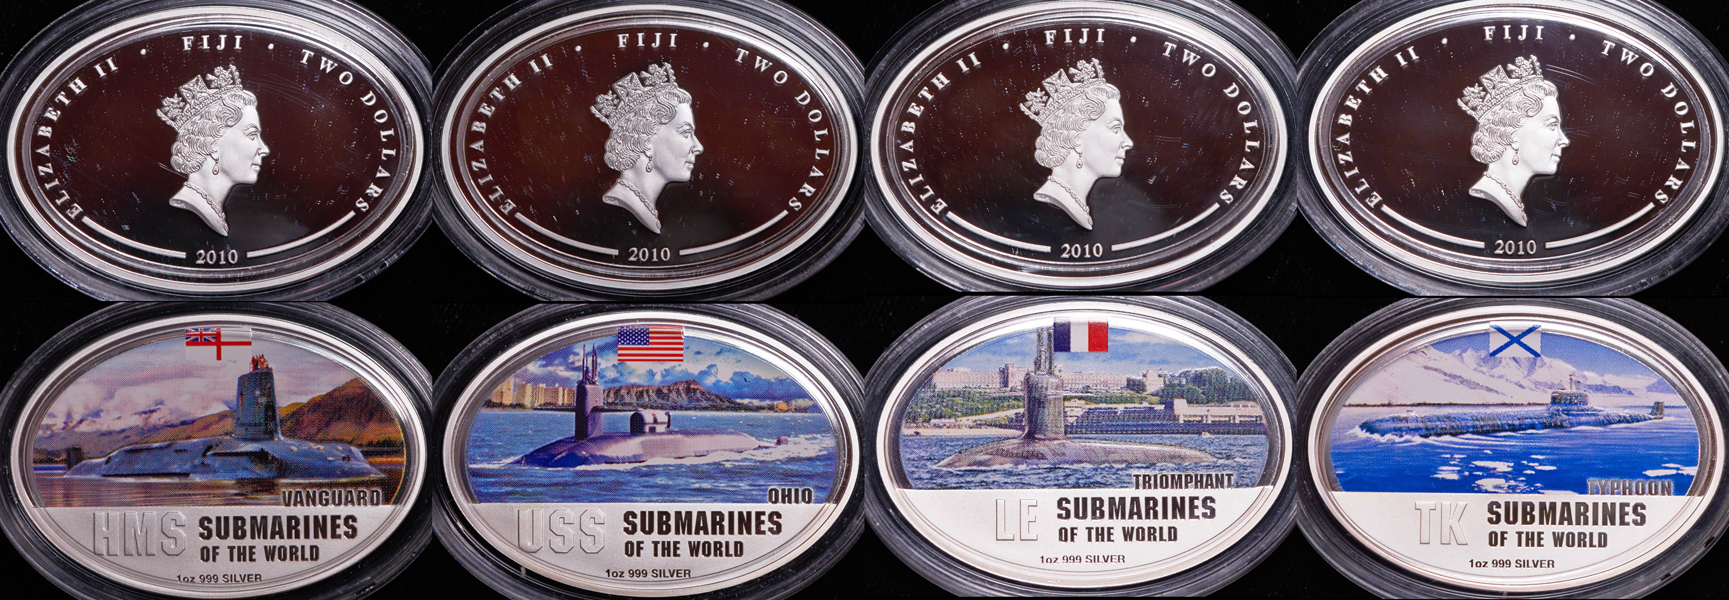 Набор из 4-х монет "Подводные лодки мира" 2010 (Фиджи)